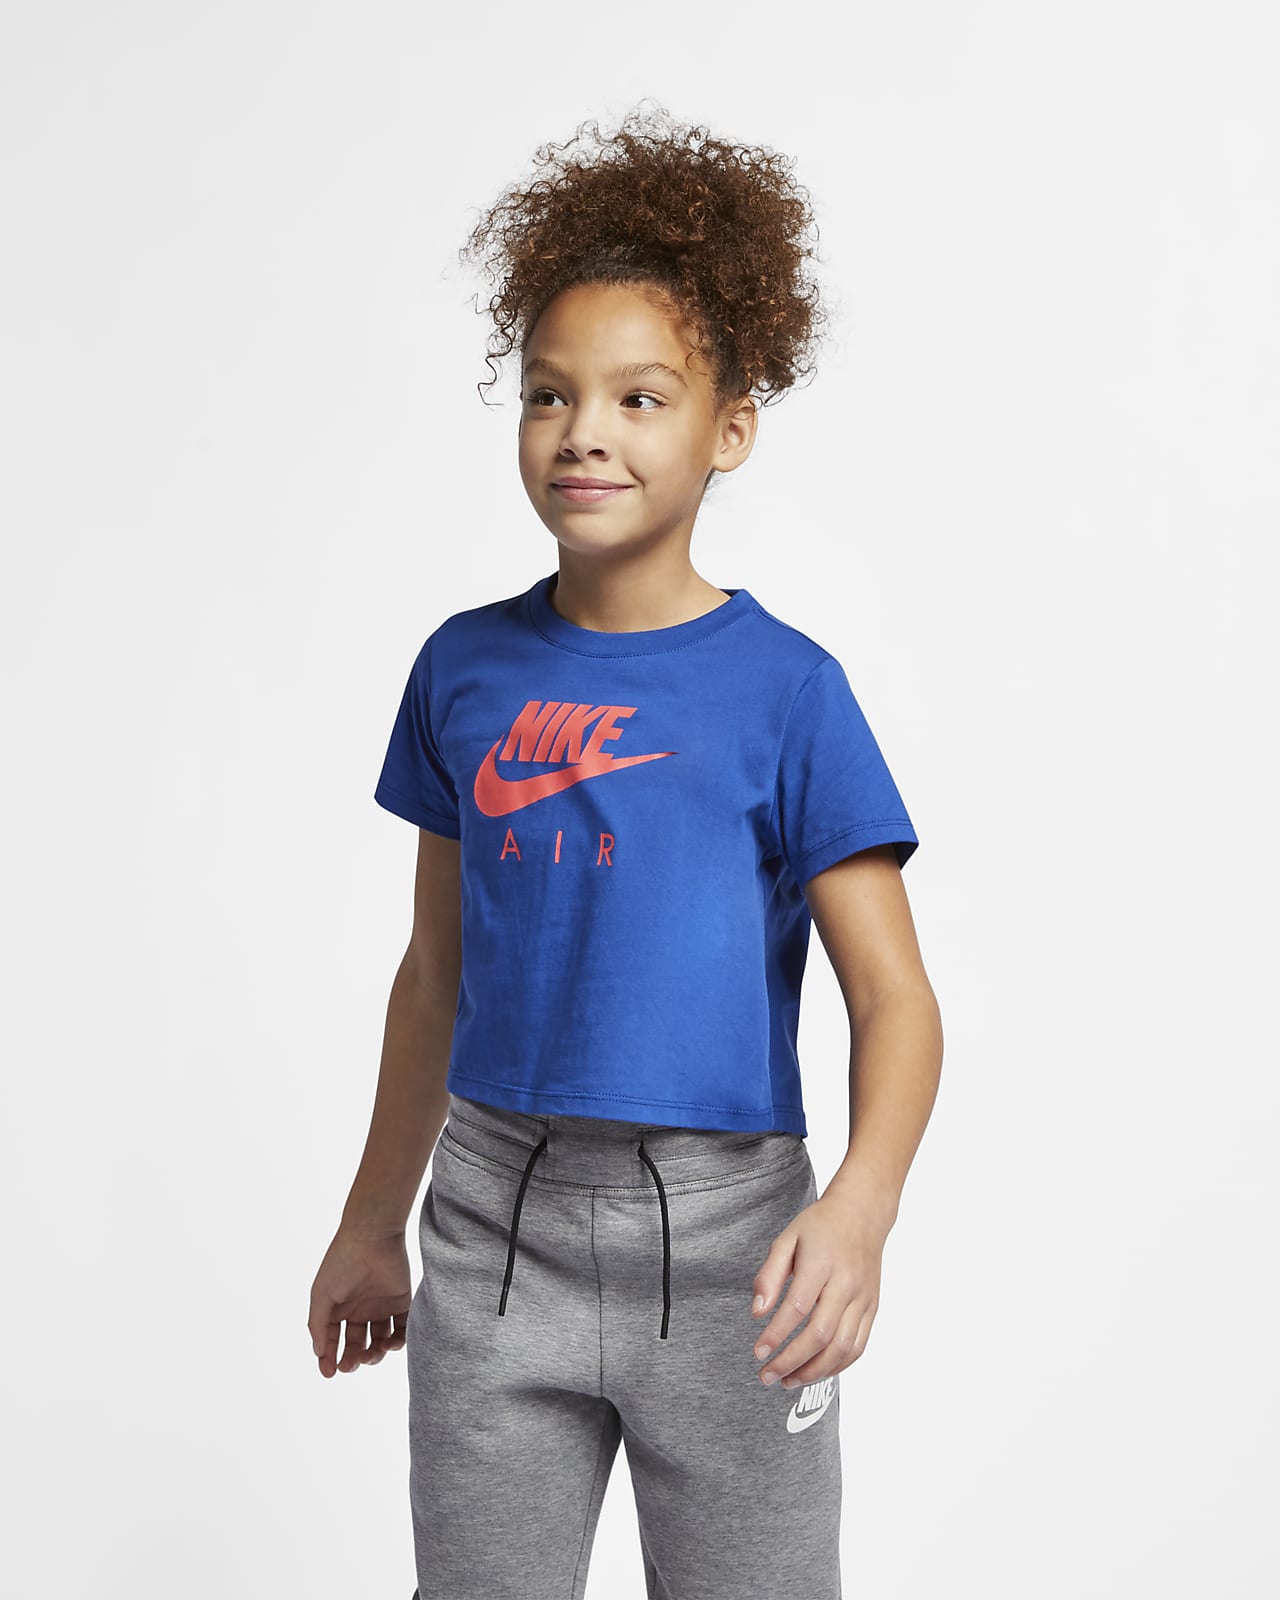 Nike Air Kurzoberteil für ältere Kinder (Mädchen)